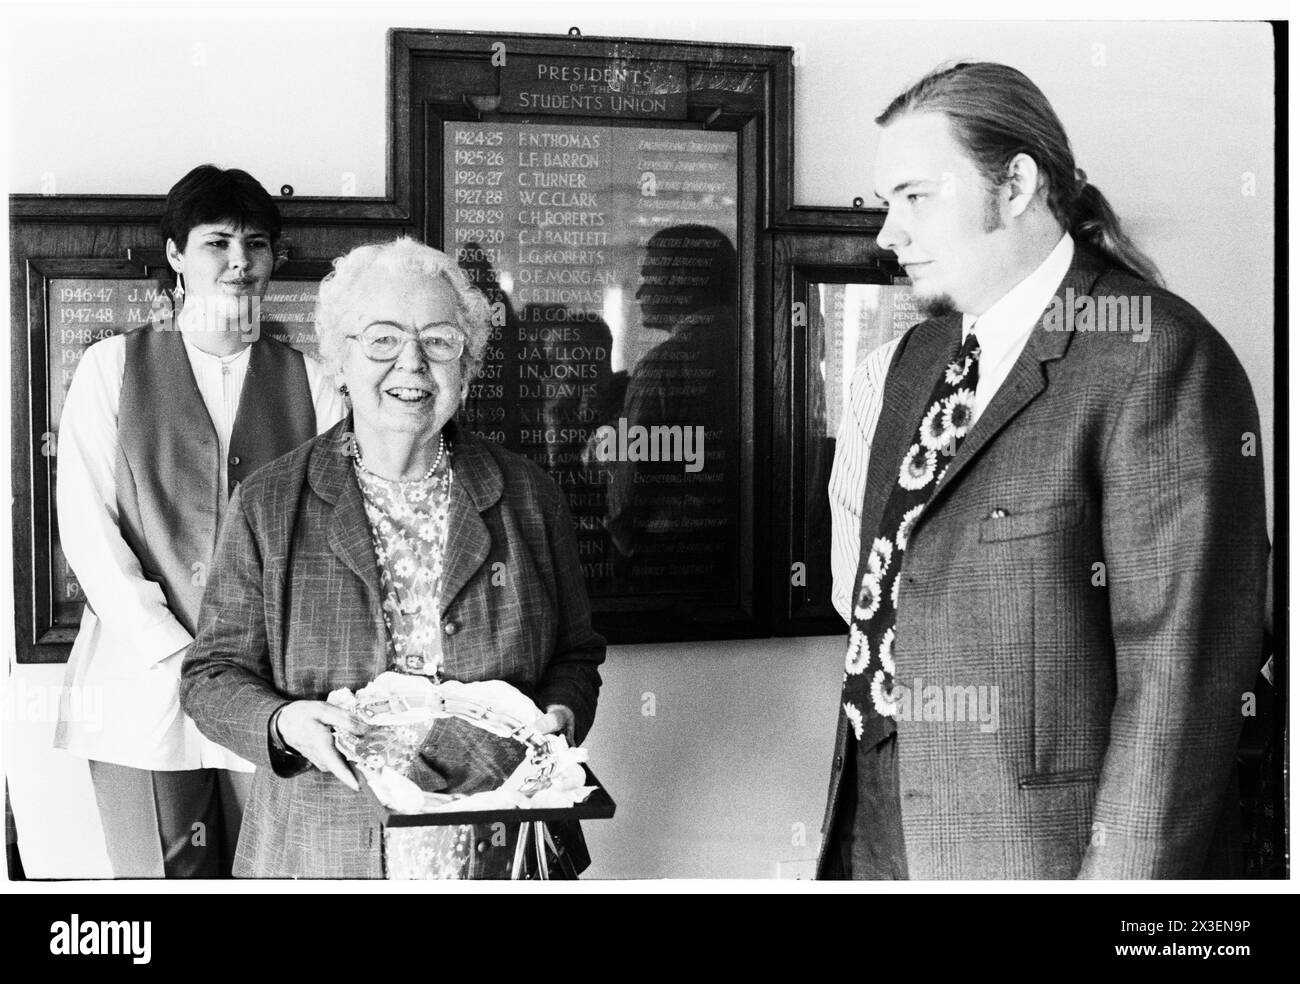 BARONNE WHITE, POLITICIENNE PIONNIÈRE, 1995 : femme politique pionnière du Parti travailliste Eirene White, baronne White (1909-1999) photographiée lors d'une cérémonie de remise des prix à vie au Syndicat des étudiants de l'Université de Cardiff le 7 juin 1995. Photo : Rob Watkins. INFO : la baronne Eirene White, une politicienne travailliste britannique née en 1909 était une figure éminente de la politique galloise et britannique d'après-guerre. En tant que députée pendant 20 ans (1950-1970) et plus tard en tant que pair à vie, elle défend des causes progressistes, en particulier le bien-être social et les droits des femmes, laissant un impact durable sur la société britannique. Banque D'Images